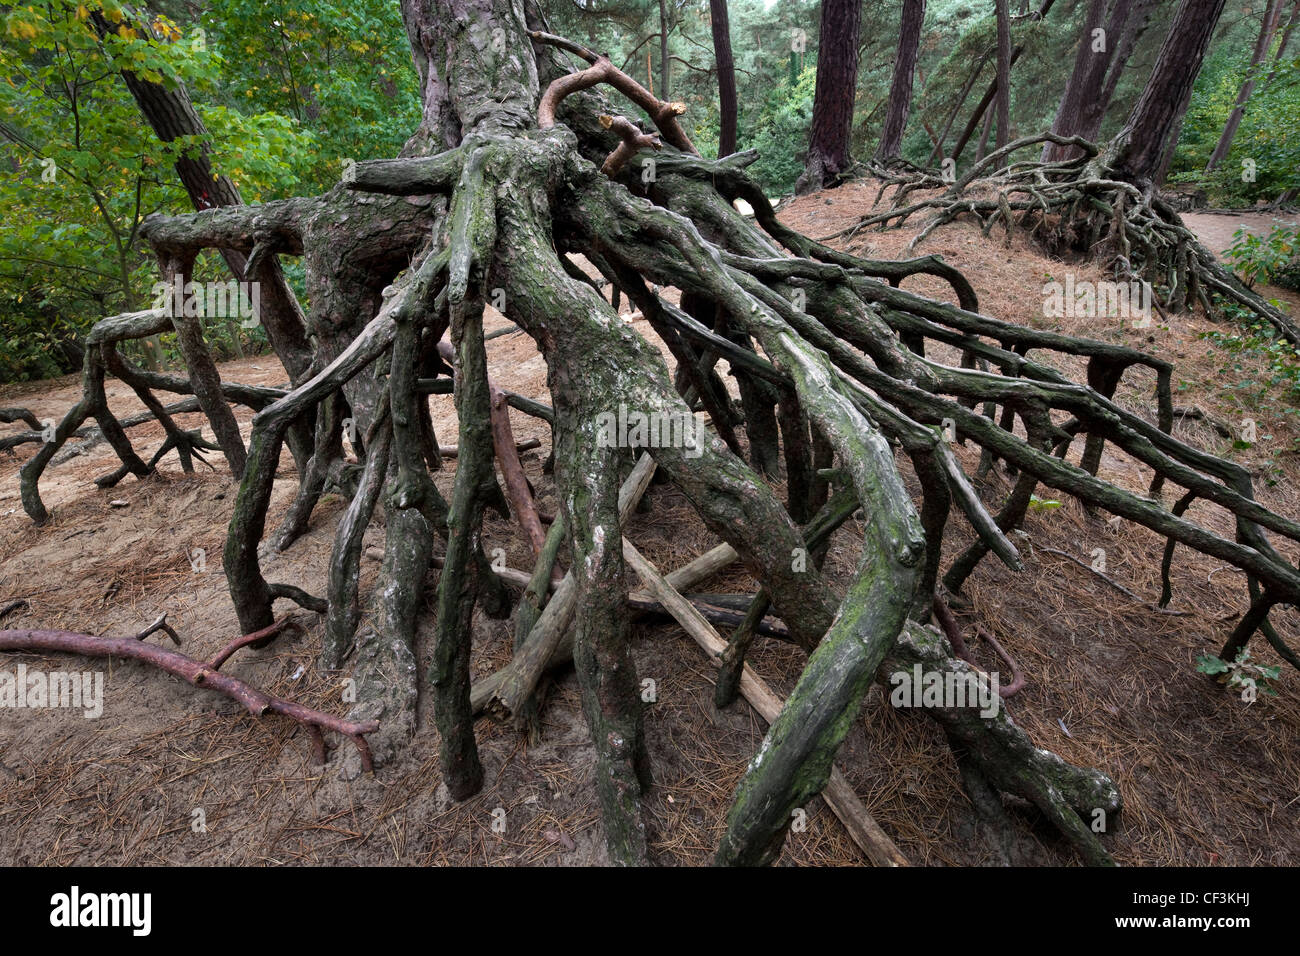 Les racines exposées de pin sylvestre (Pinus sylvestris) en raison de l'érosion du sol dans la forêt de Kasterlee, Belgique Banque D'Images